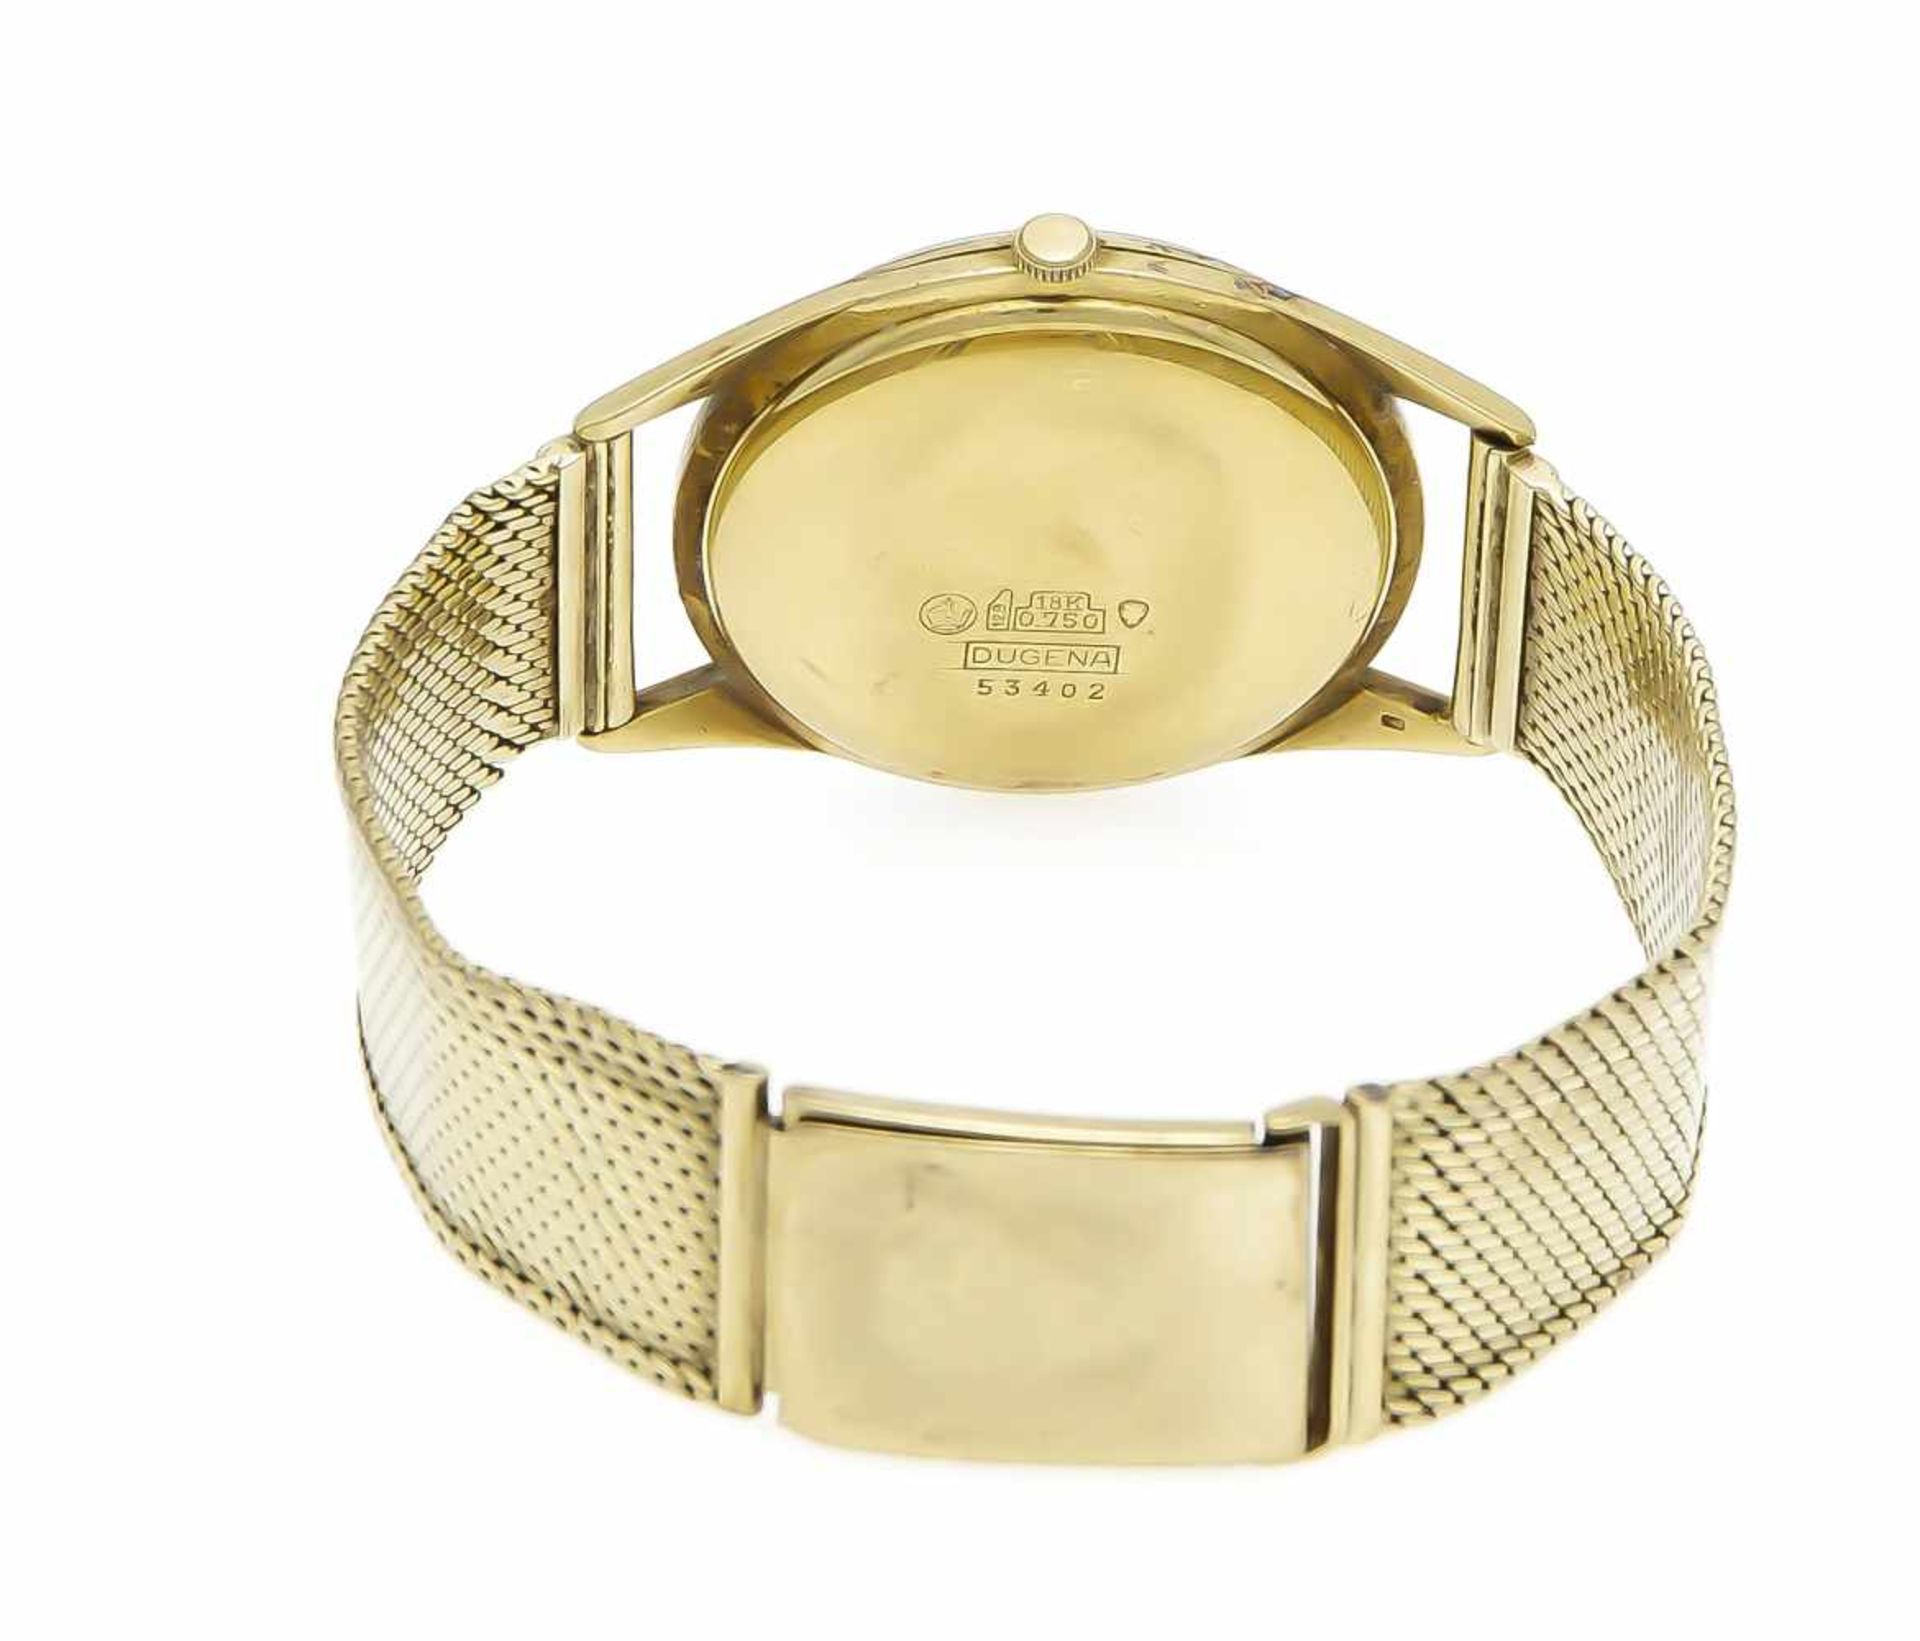 Dugena men's automatic watch, case gold 750/000, milanese watch strap gold 585/000, - Bild 2 aus 2